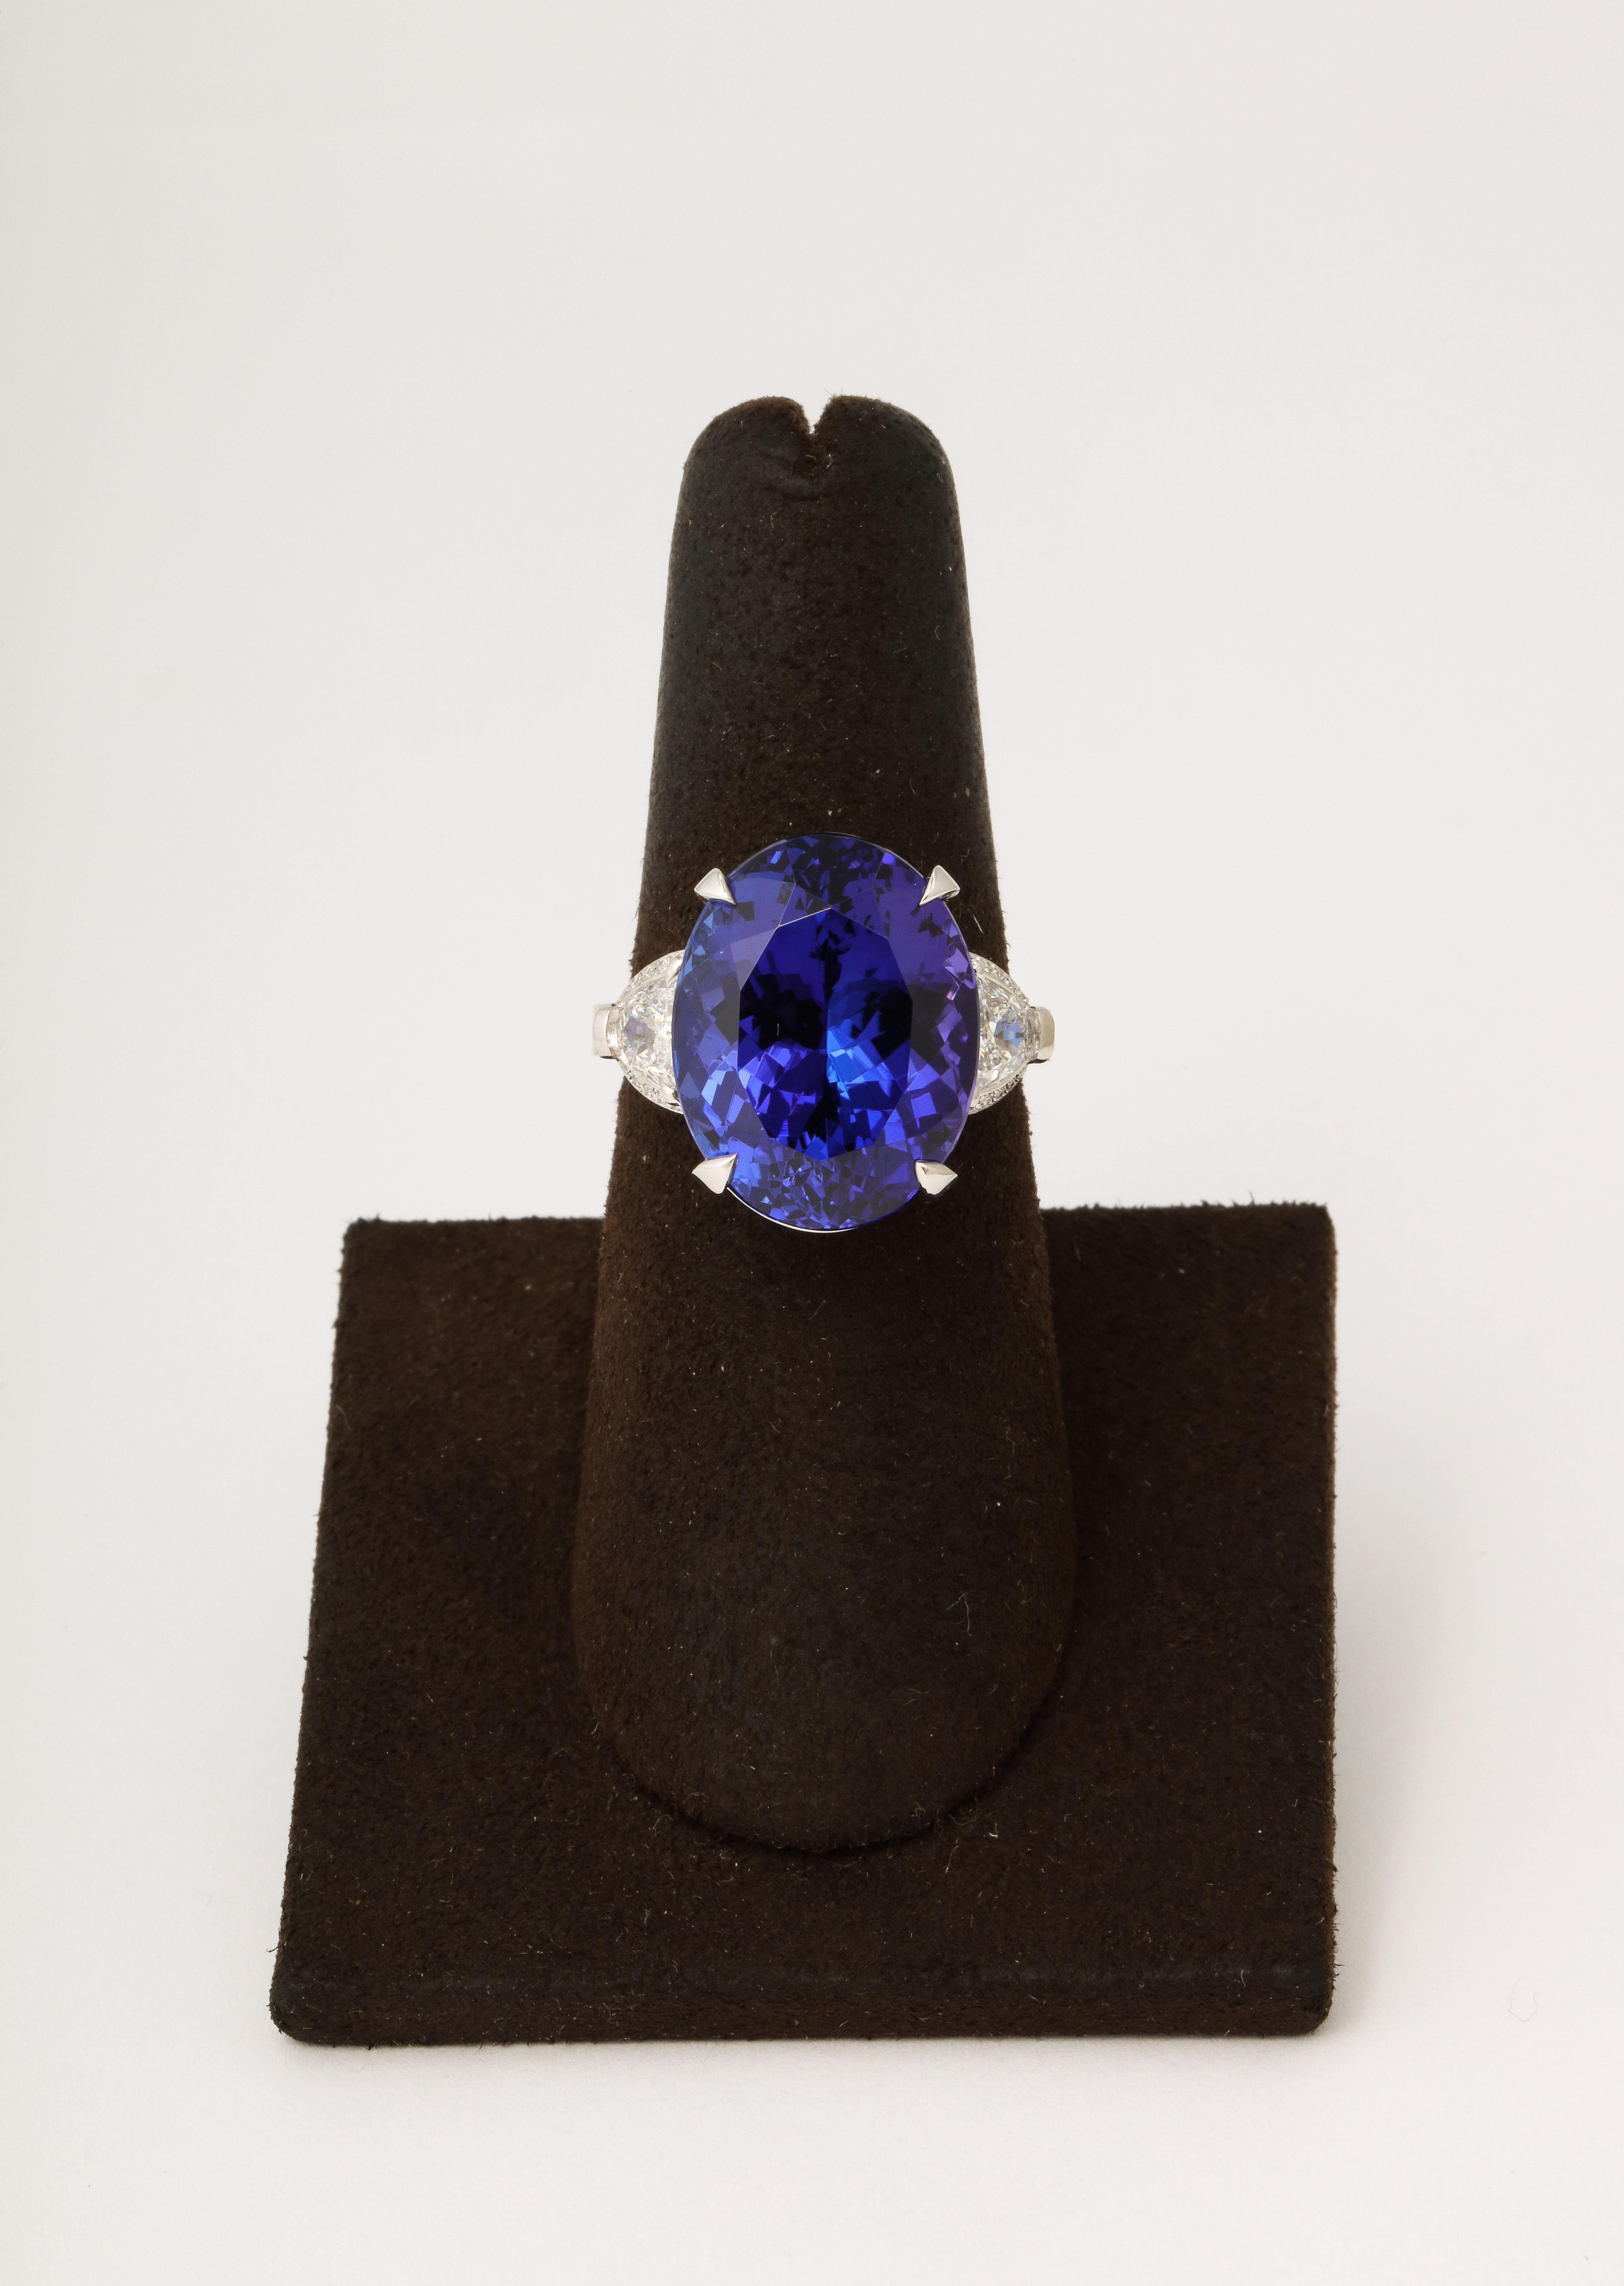 
Ein SUBLIME Tansanit! 

14,89 Karat GIA-zertifizierter ovaler Tansanit 

1,10 Karat seitliche Diamanten. 

Maßanfertigung aus Platin. 

Derzeit eine Größe 6,5 dieser Ring kann leicht geändert werden. 


